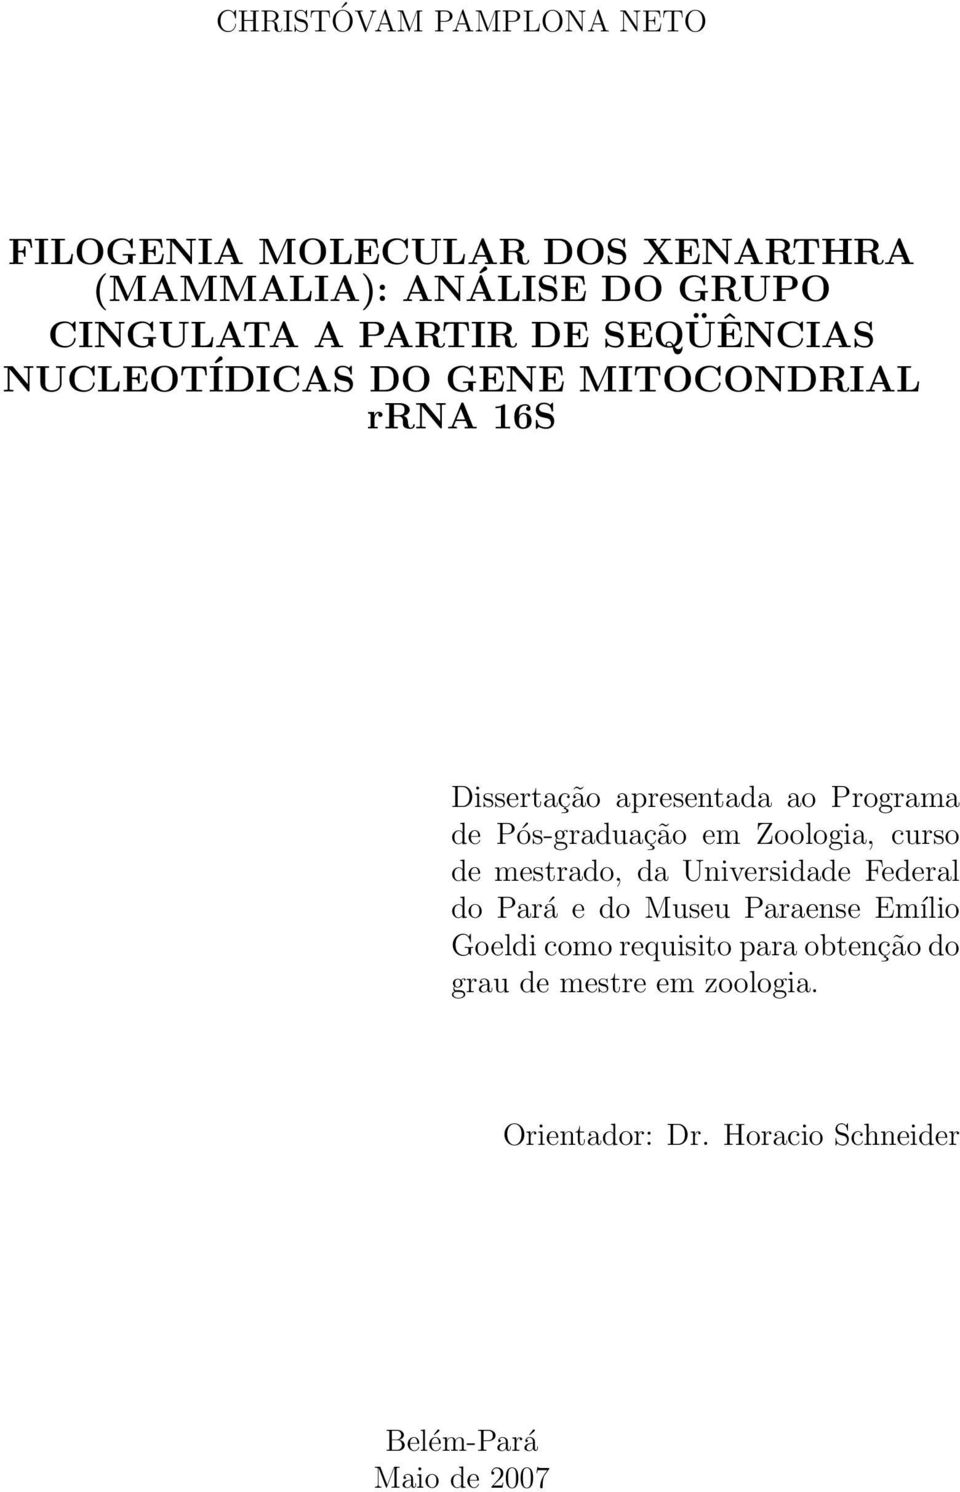 Pós-graduação em Zoologia, curso de mestrado, da Universidade Federal do Pará e do Museu Paraense Emílio